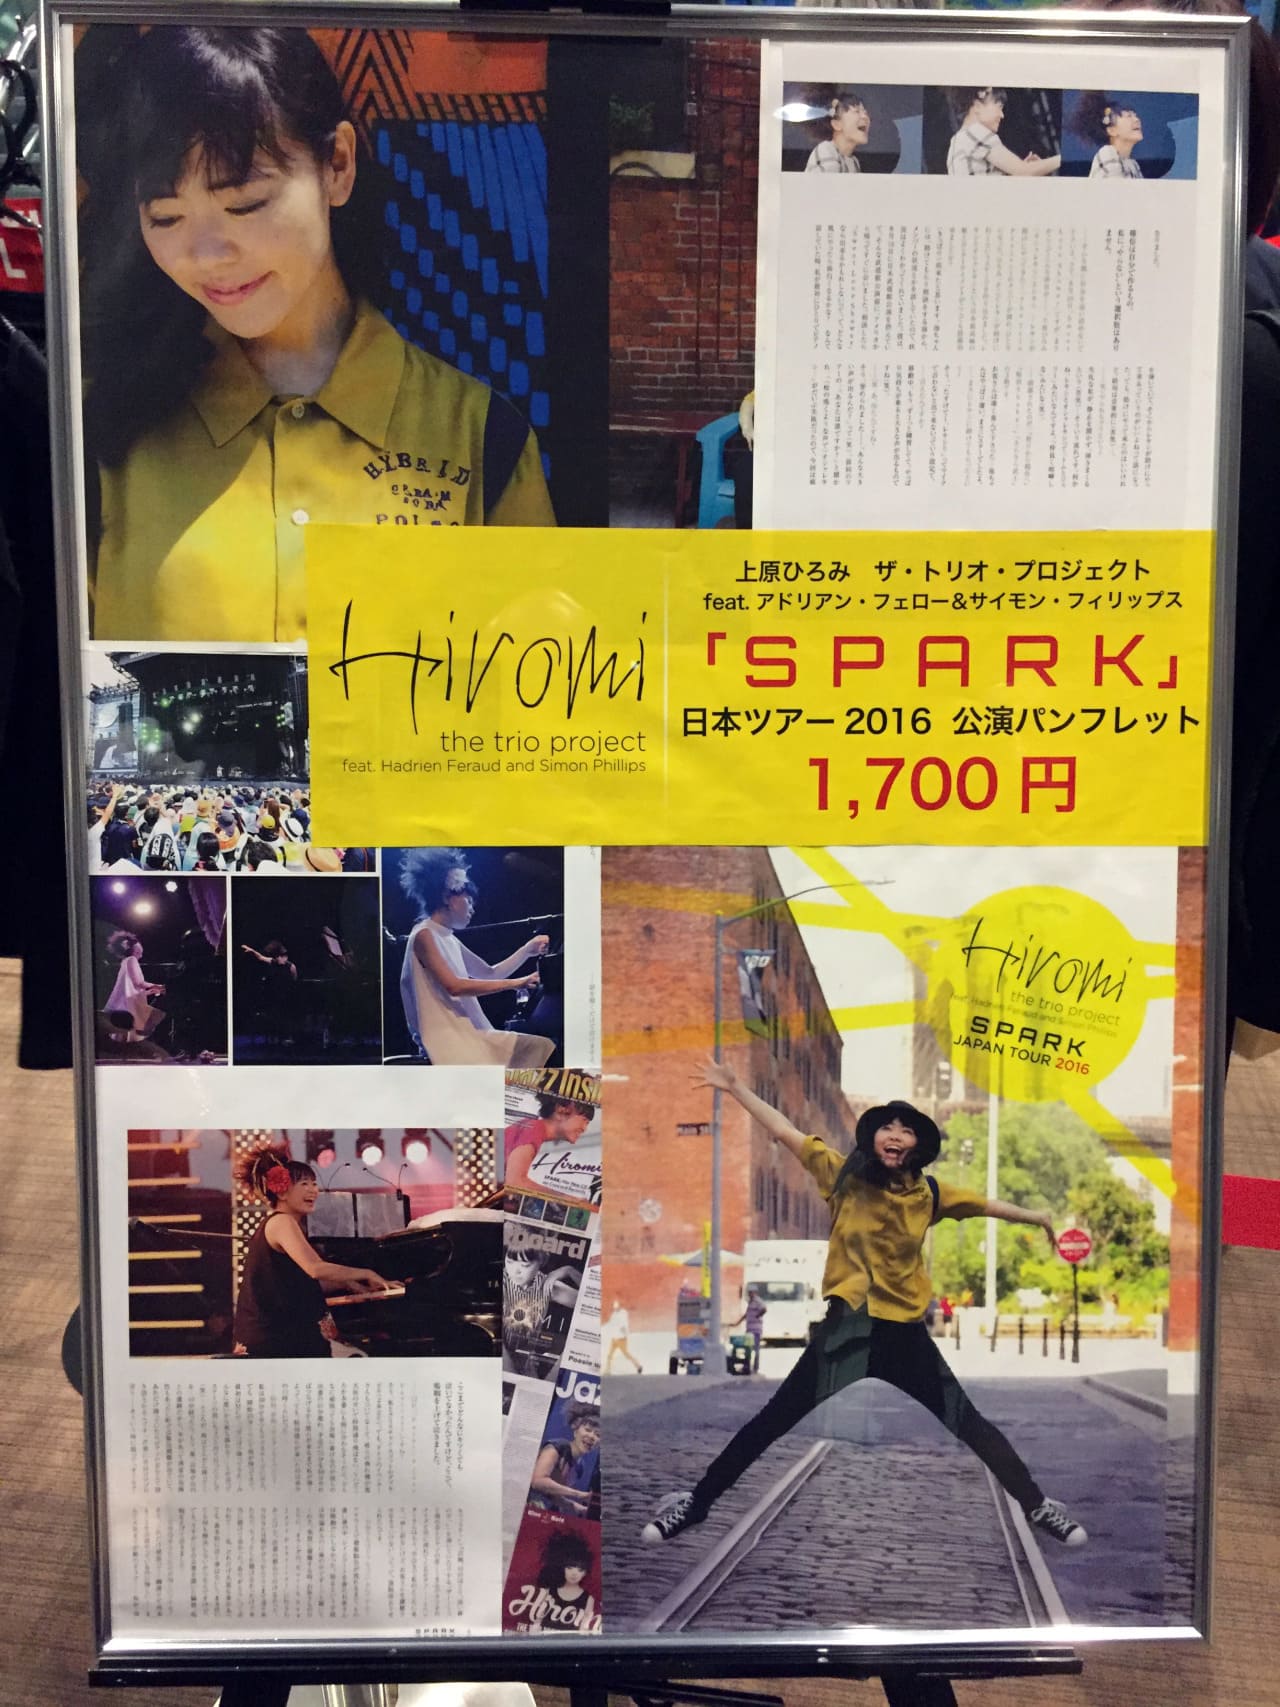 上原ひろみ ザ・トリオ・プロジェクト feat. Hadrien Feraud and Simon Phillips SPARK Japan Tour 2016